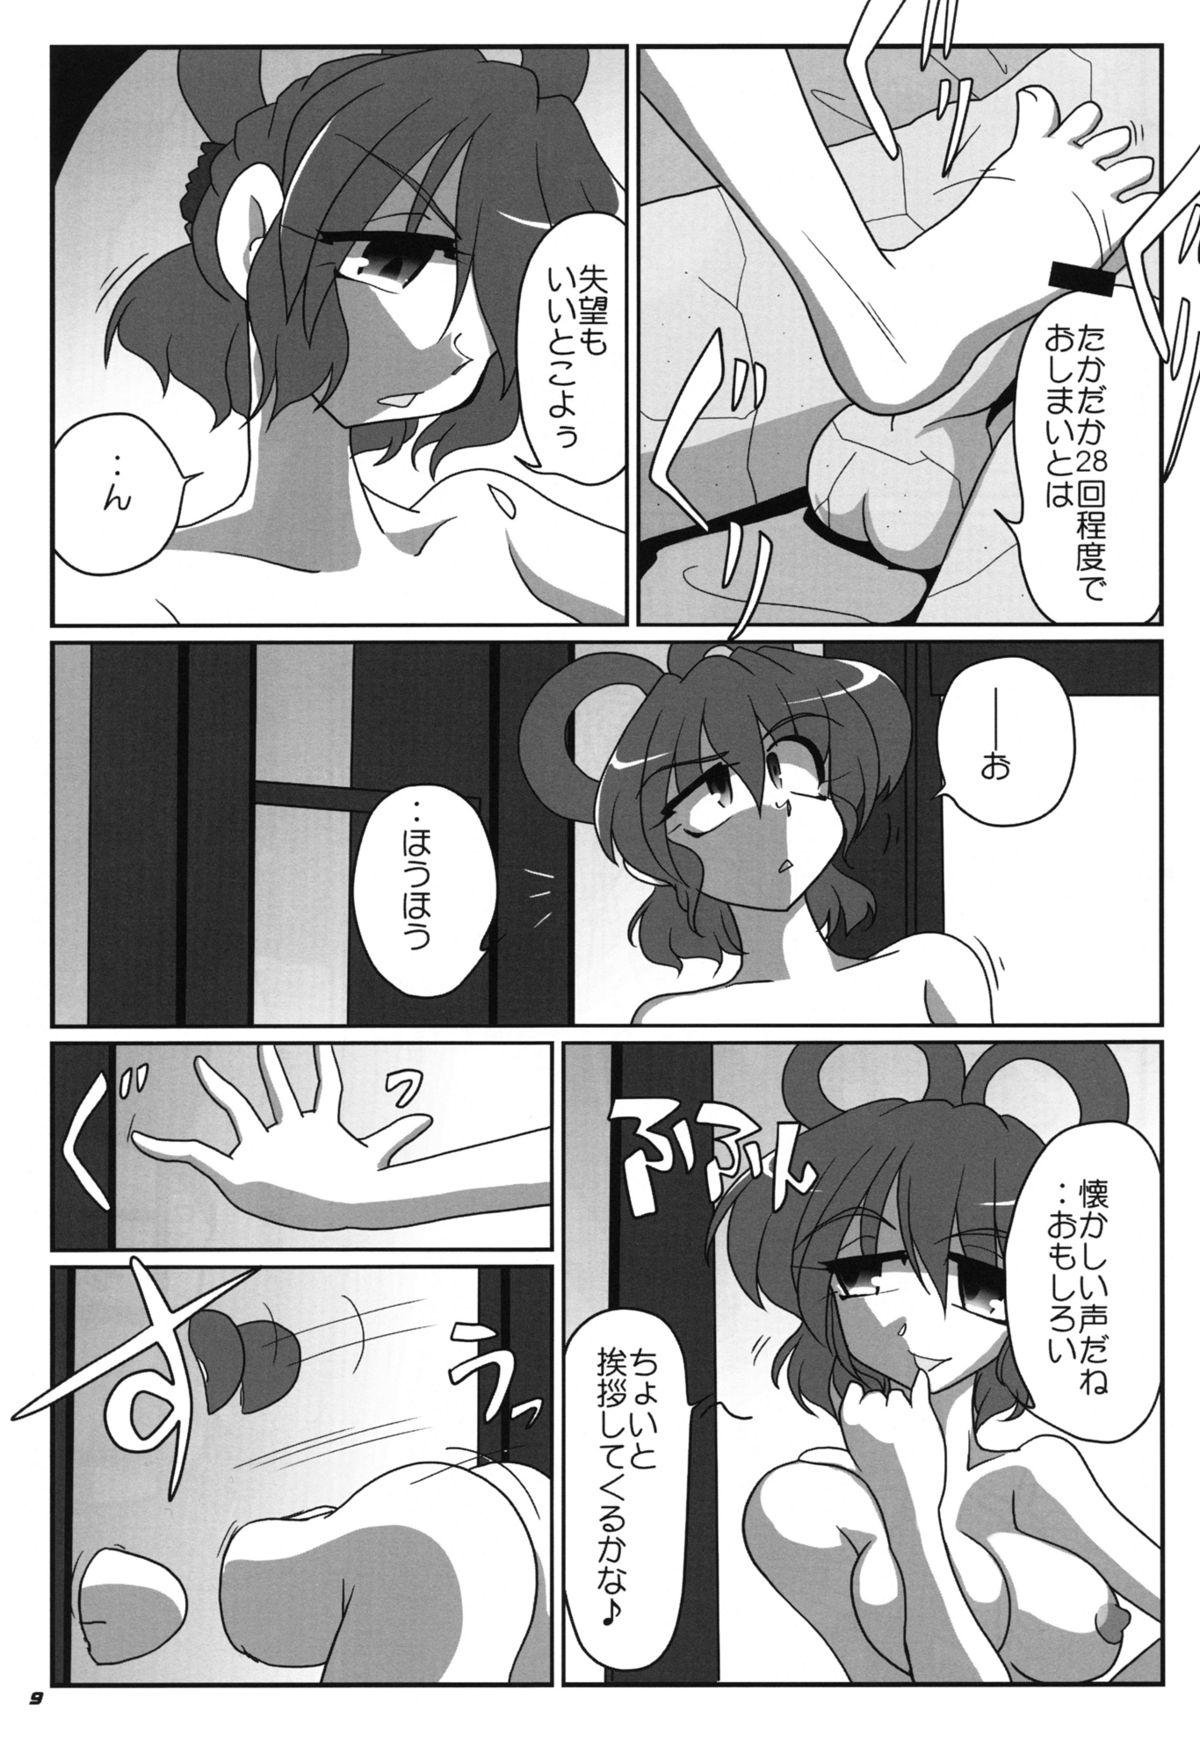 Porno 18 TOHO N+ sei-ka - Touhou project Trans - Page 11